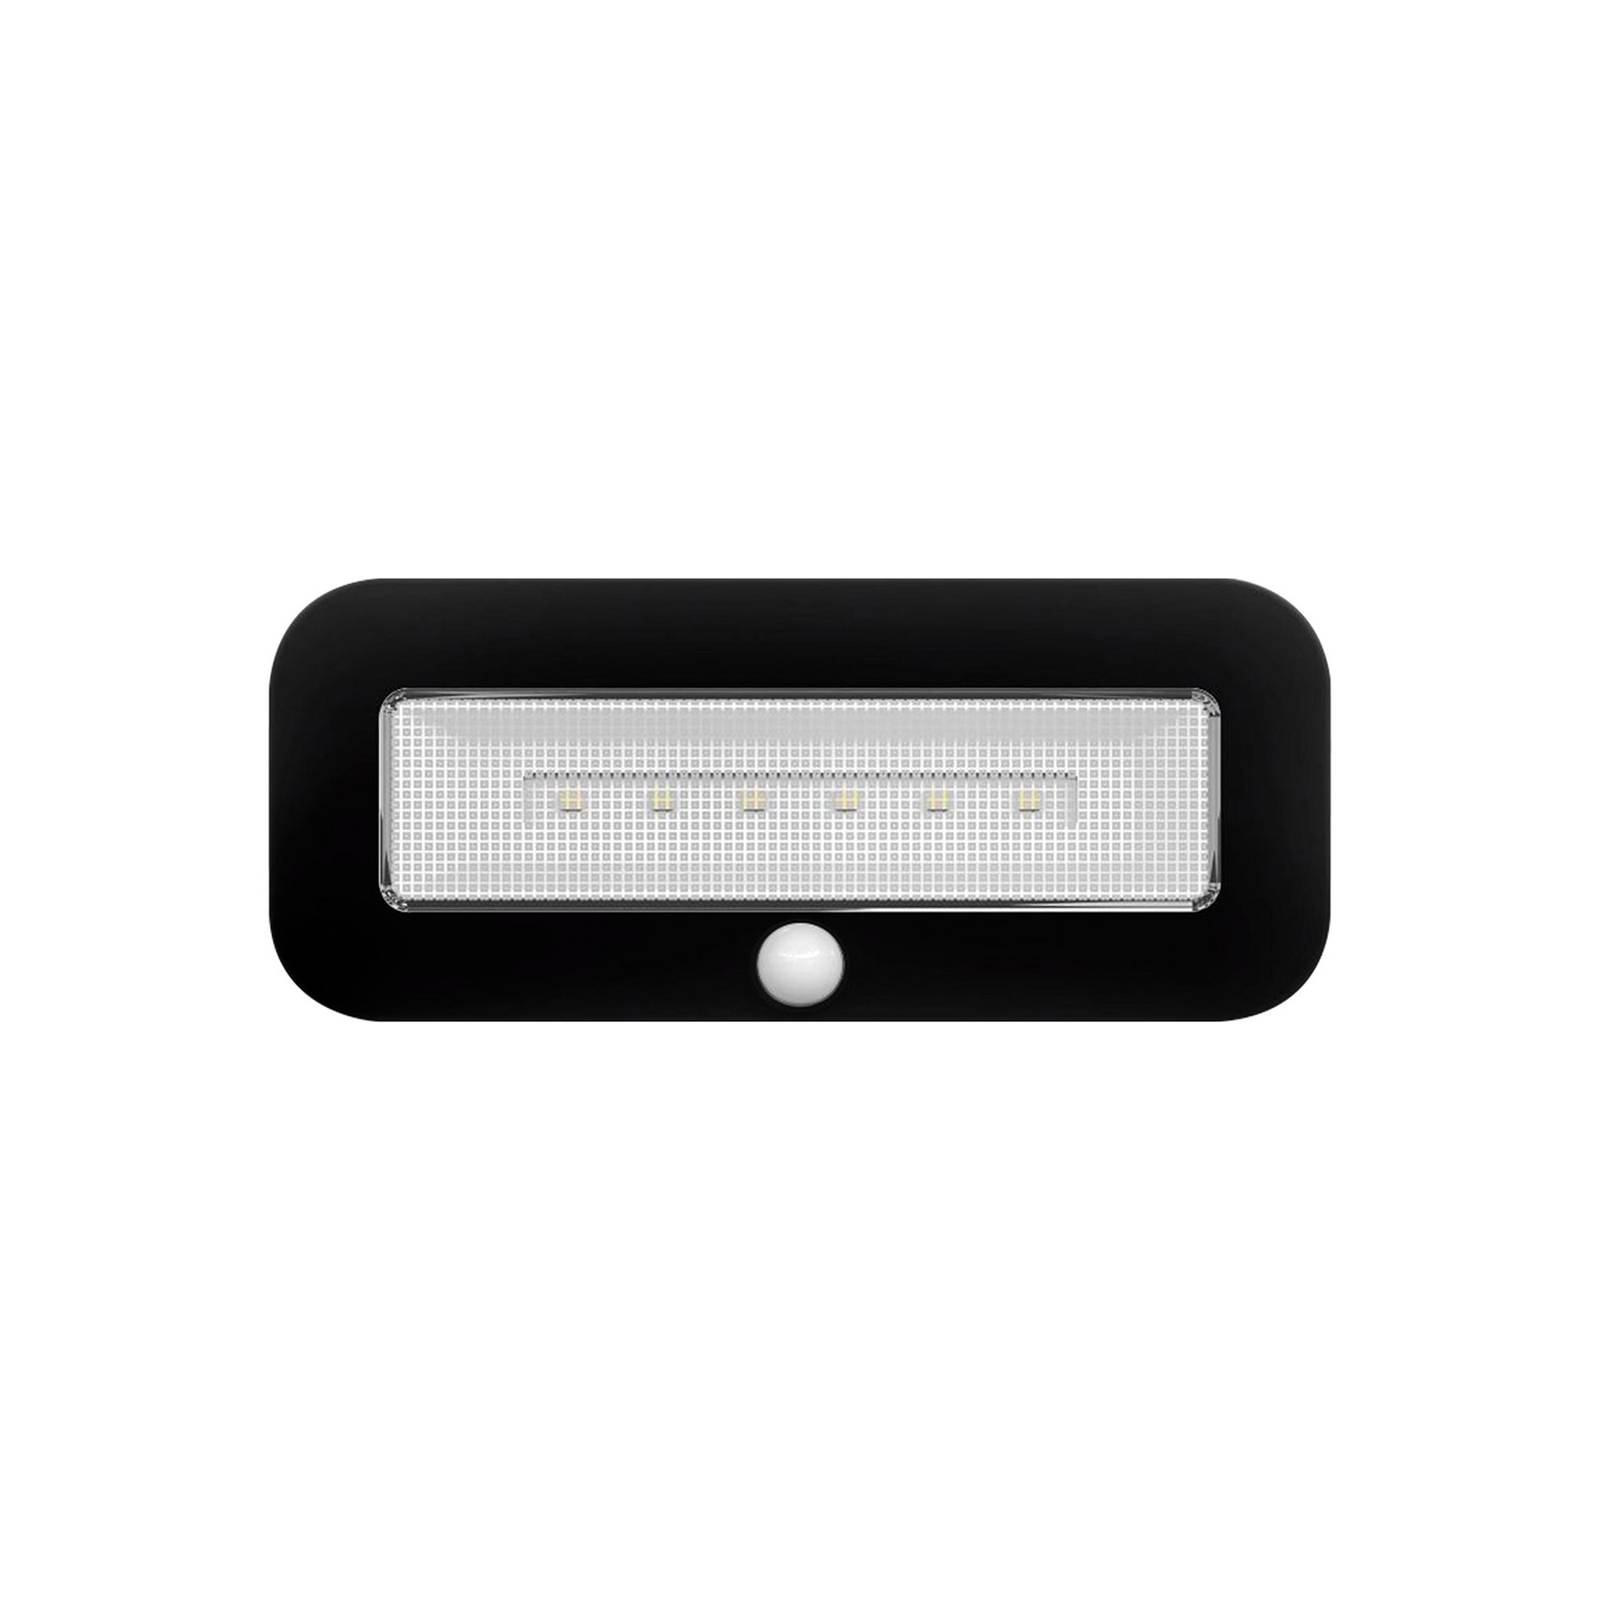 LED-kaapinalusvalaisin Mobina Sensor 15 musta